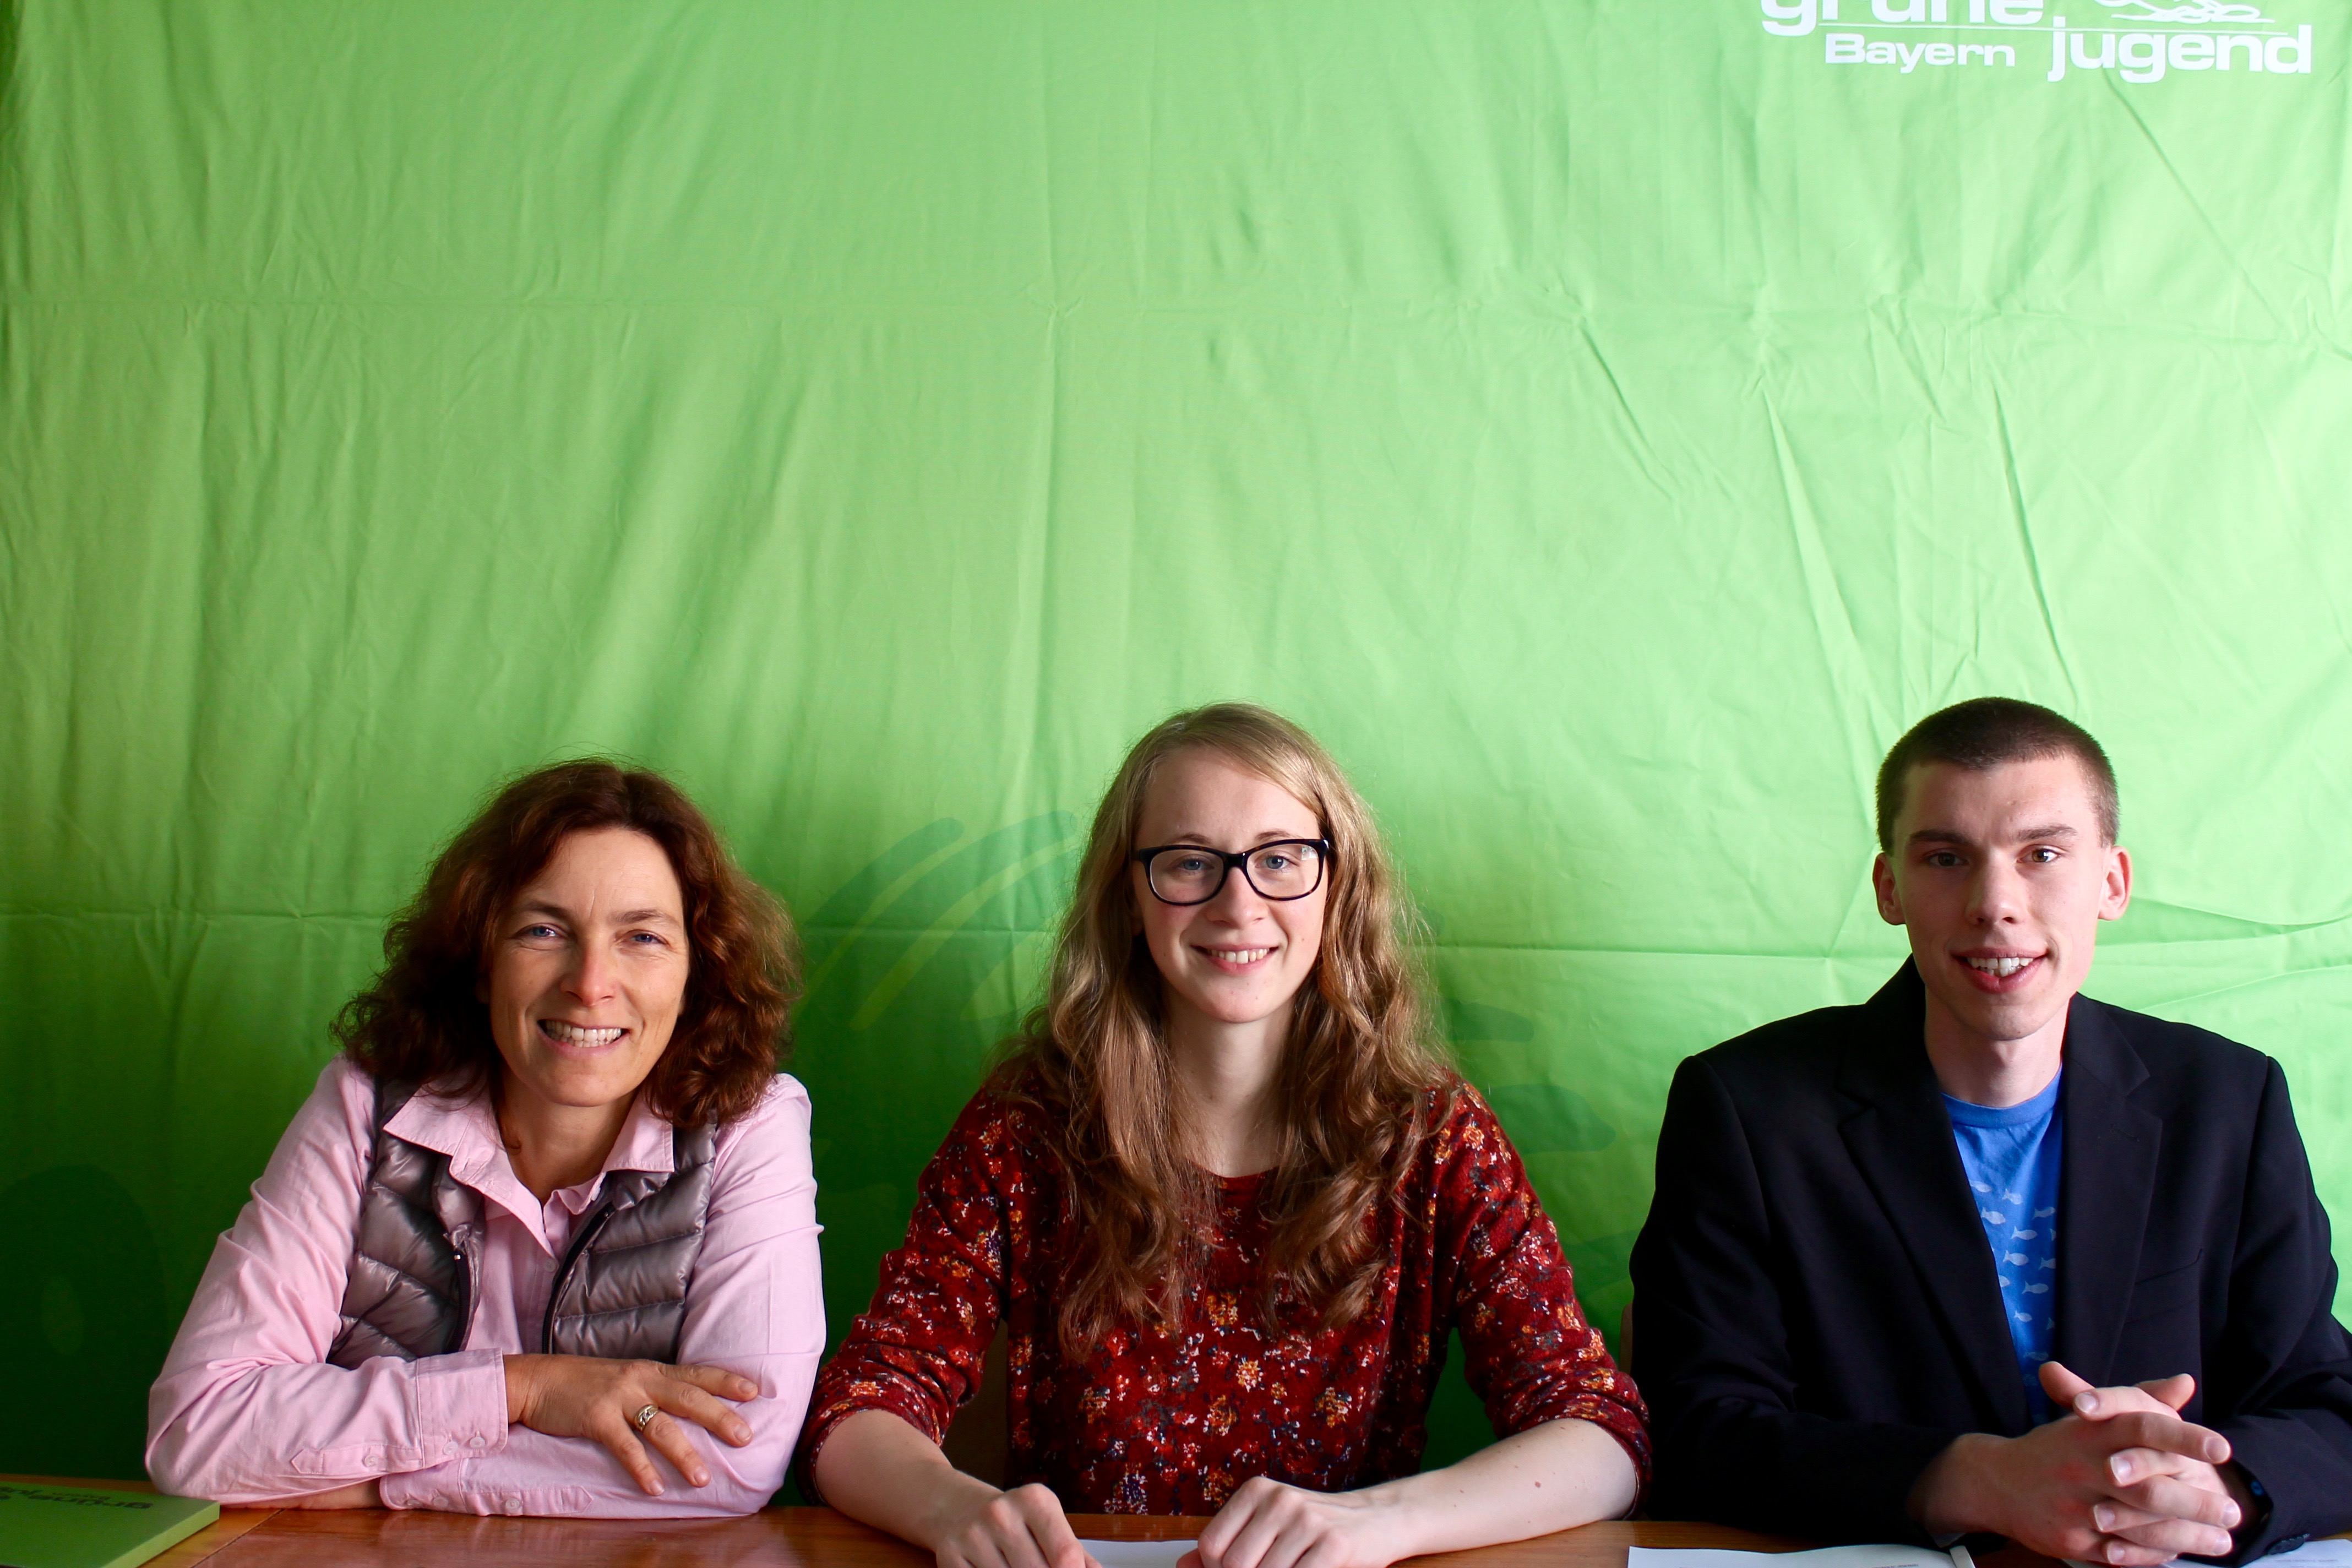 Foto von der Pressekonferenz mit Eva Lettenbauer, Matthias Ernst und Kerstin Celina.